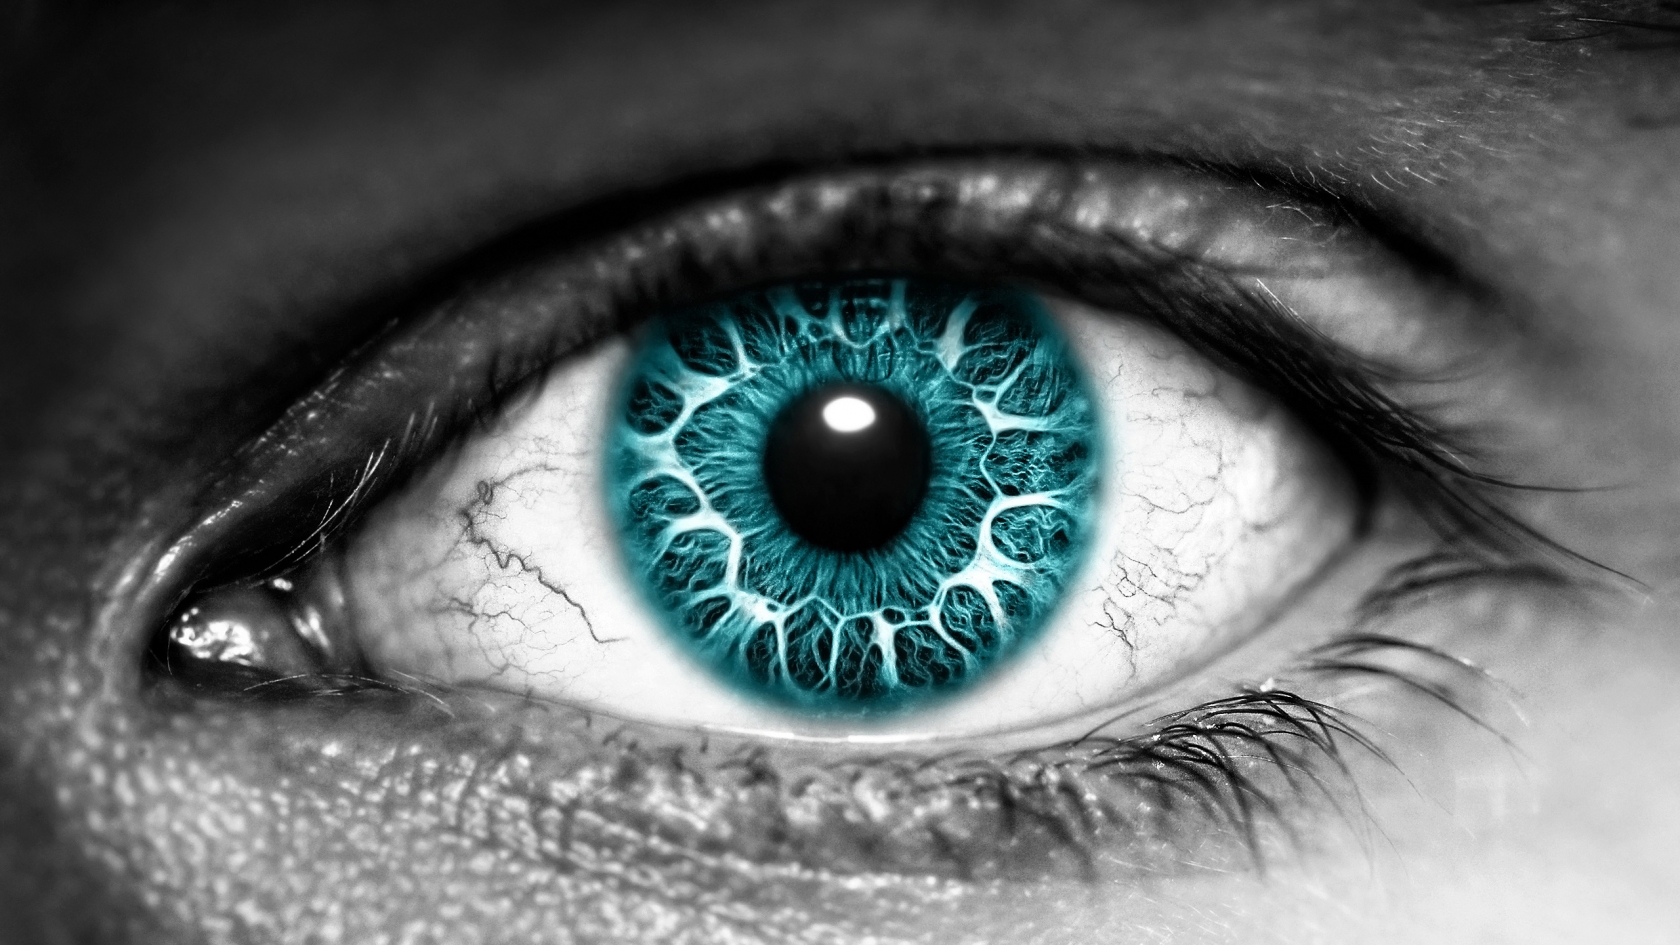 Azure Eye for 1680 x 945 HDTV resolution